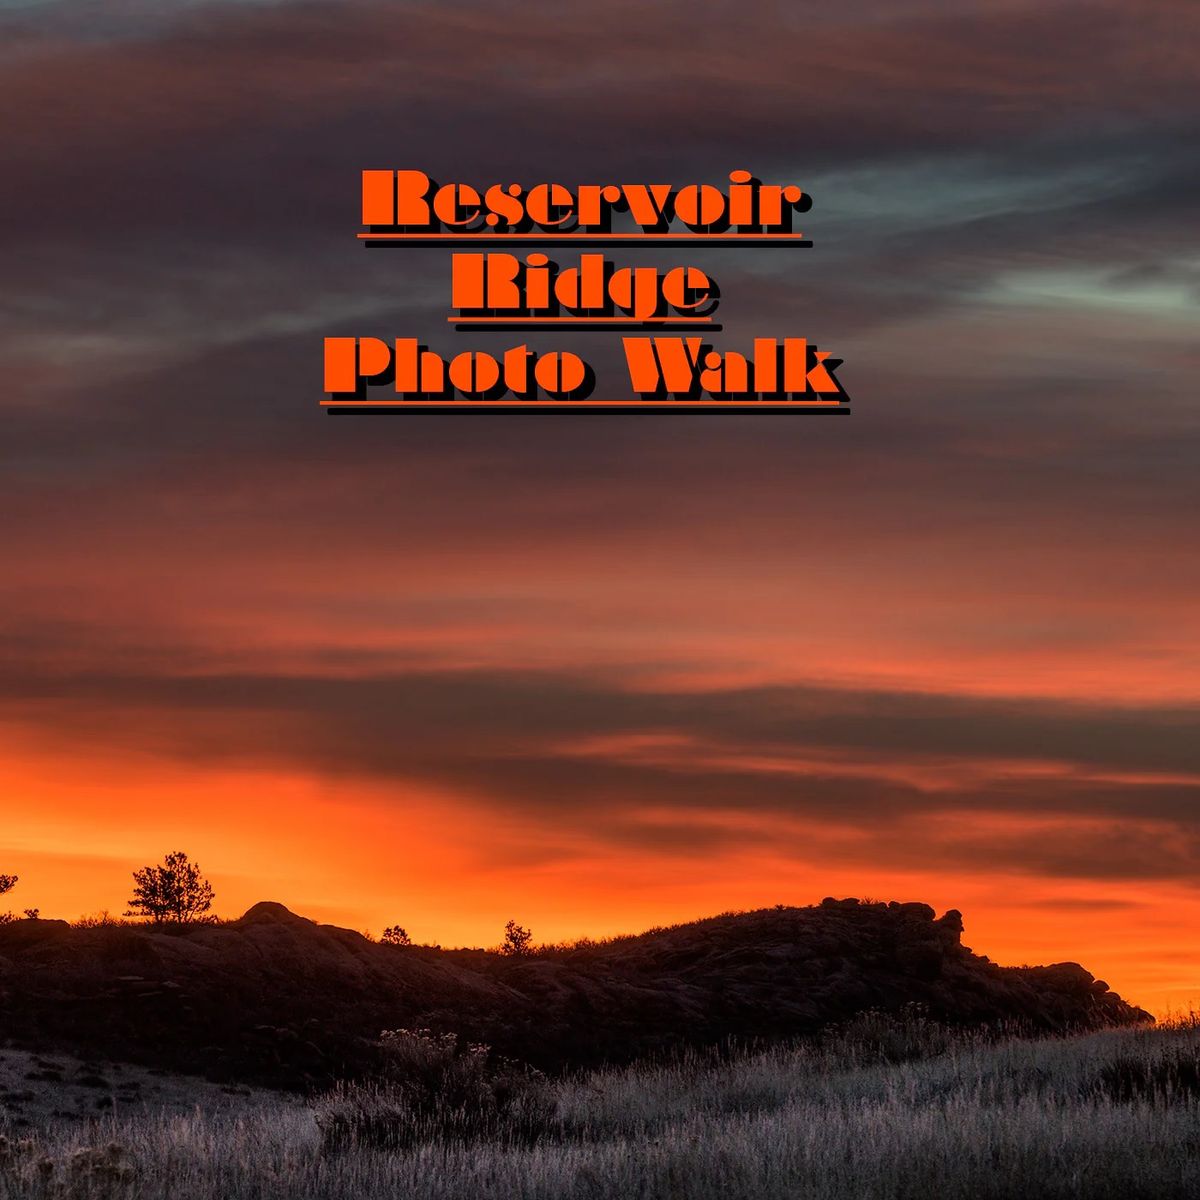 Photo Walk: Evening at Reservoir Ridge Art Class